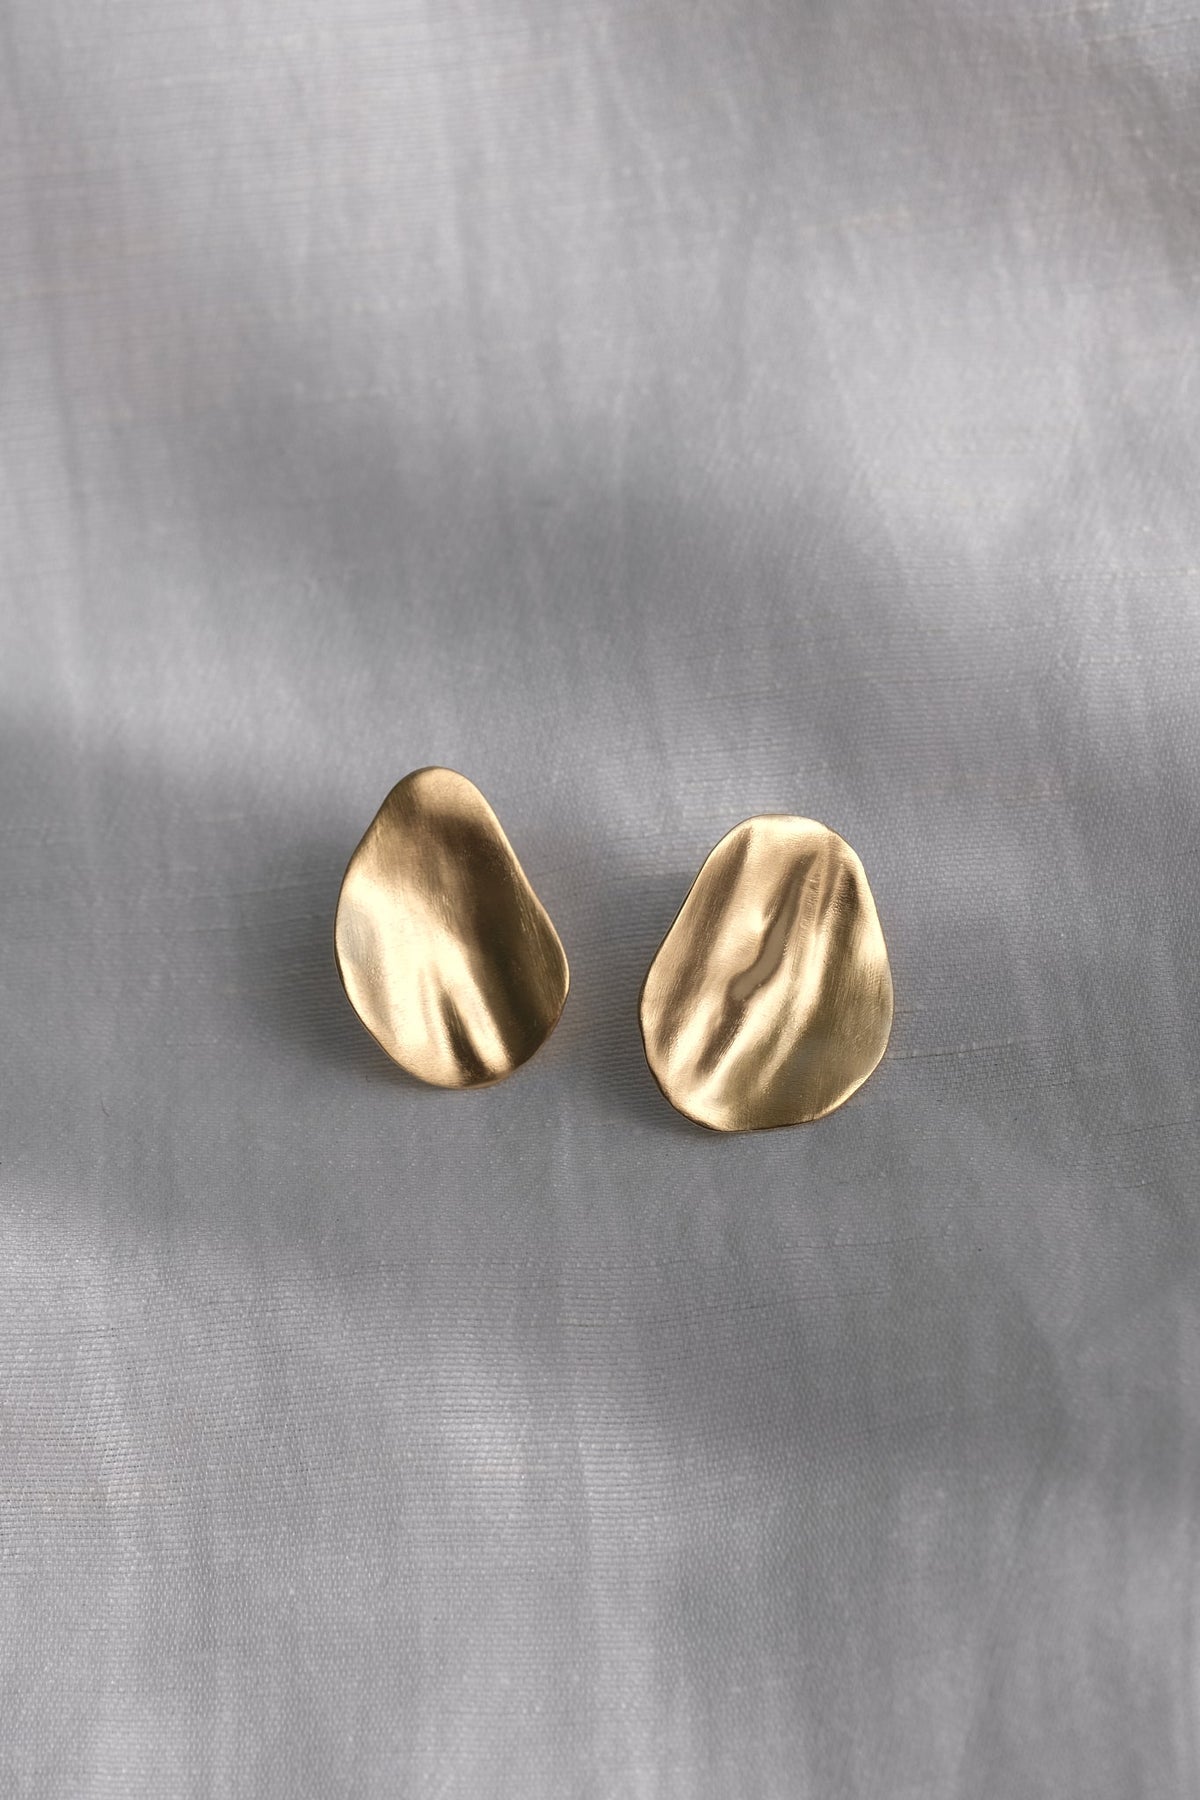 EIRA solo earrings 18k gold